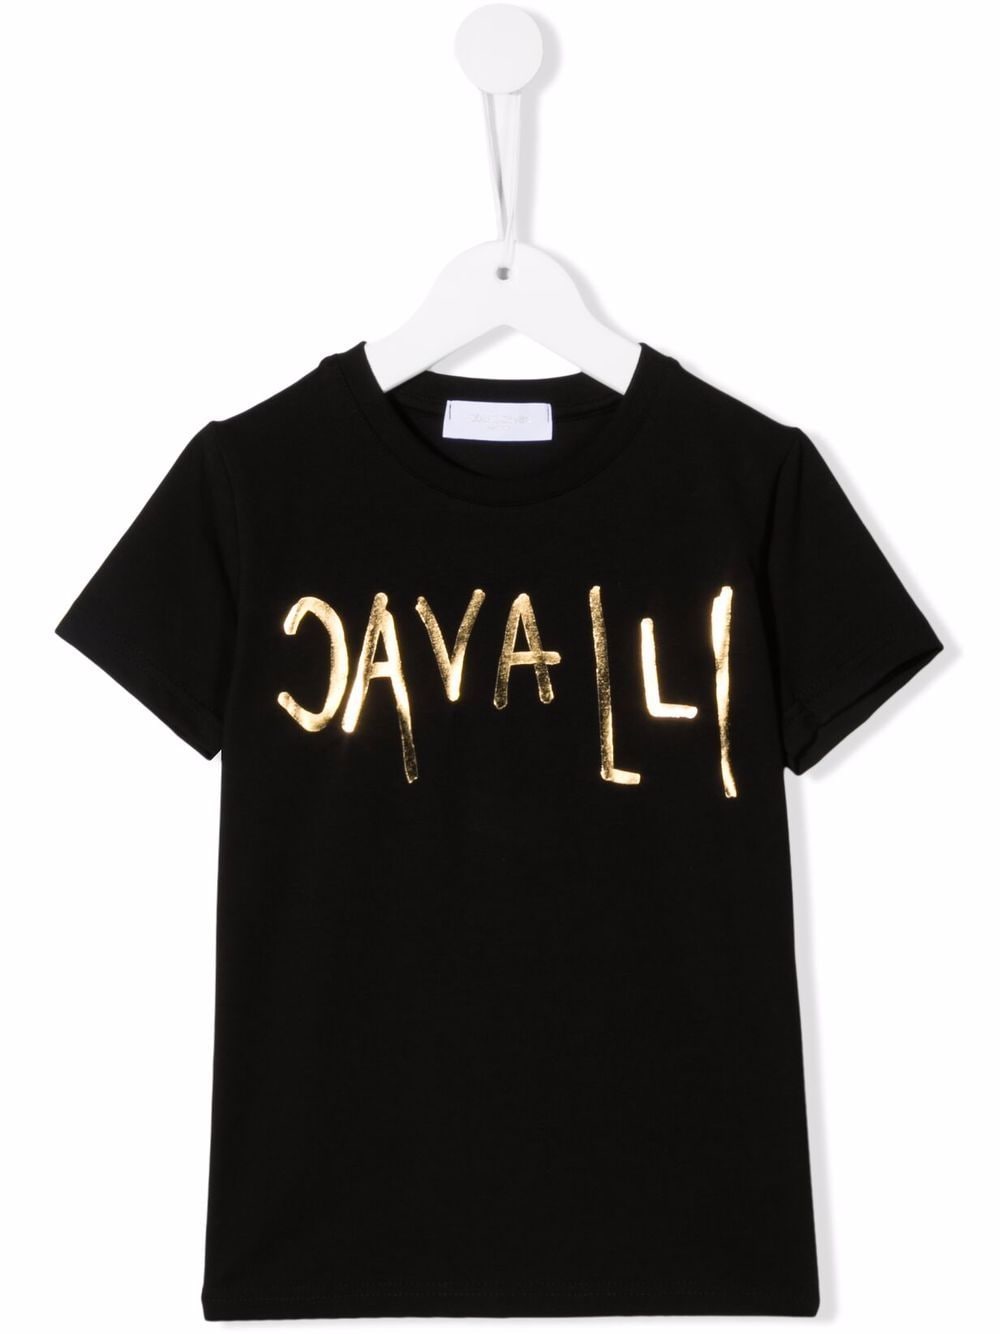 фото Roberto cavalli junior футболка с логотипом